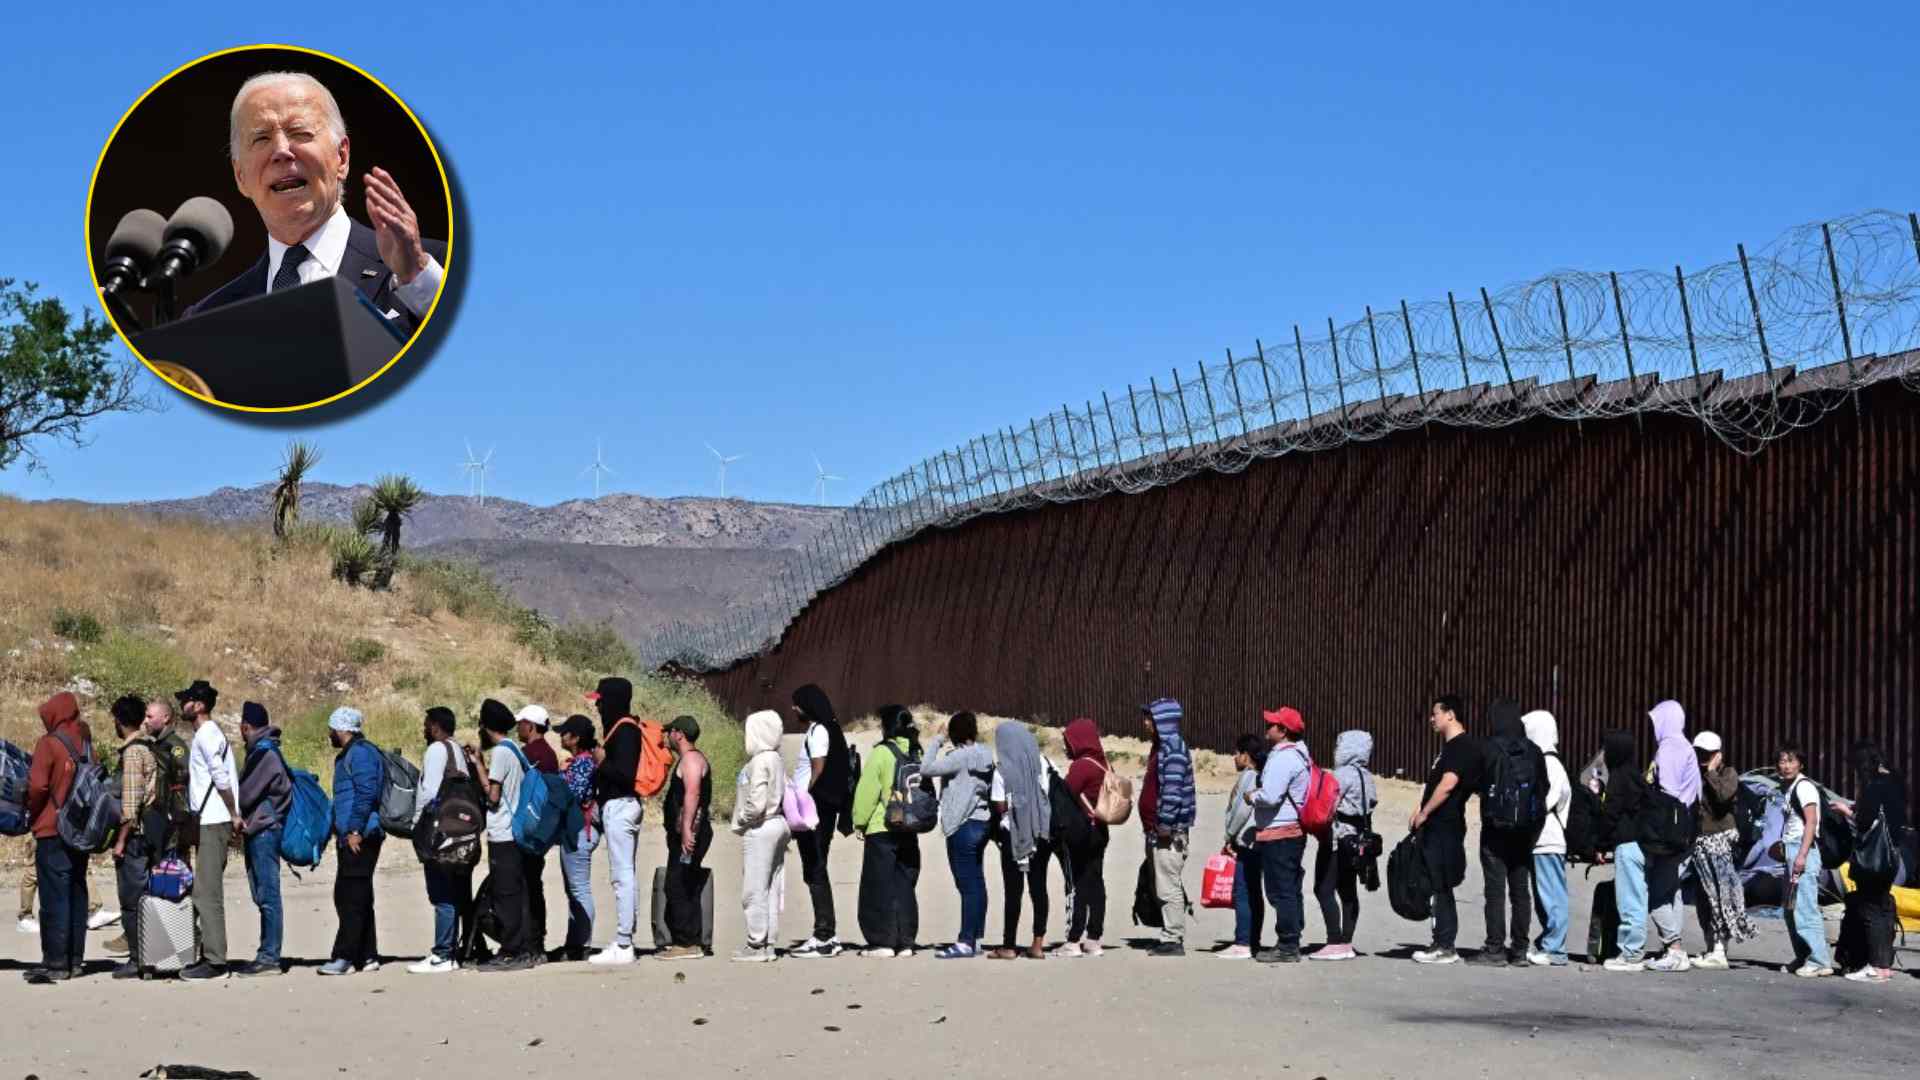 Migrantes continúan cruzando la frontera de EE.UU. pese a Biden